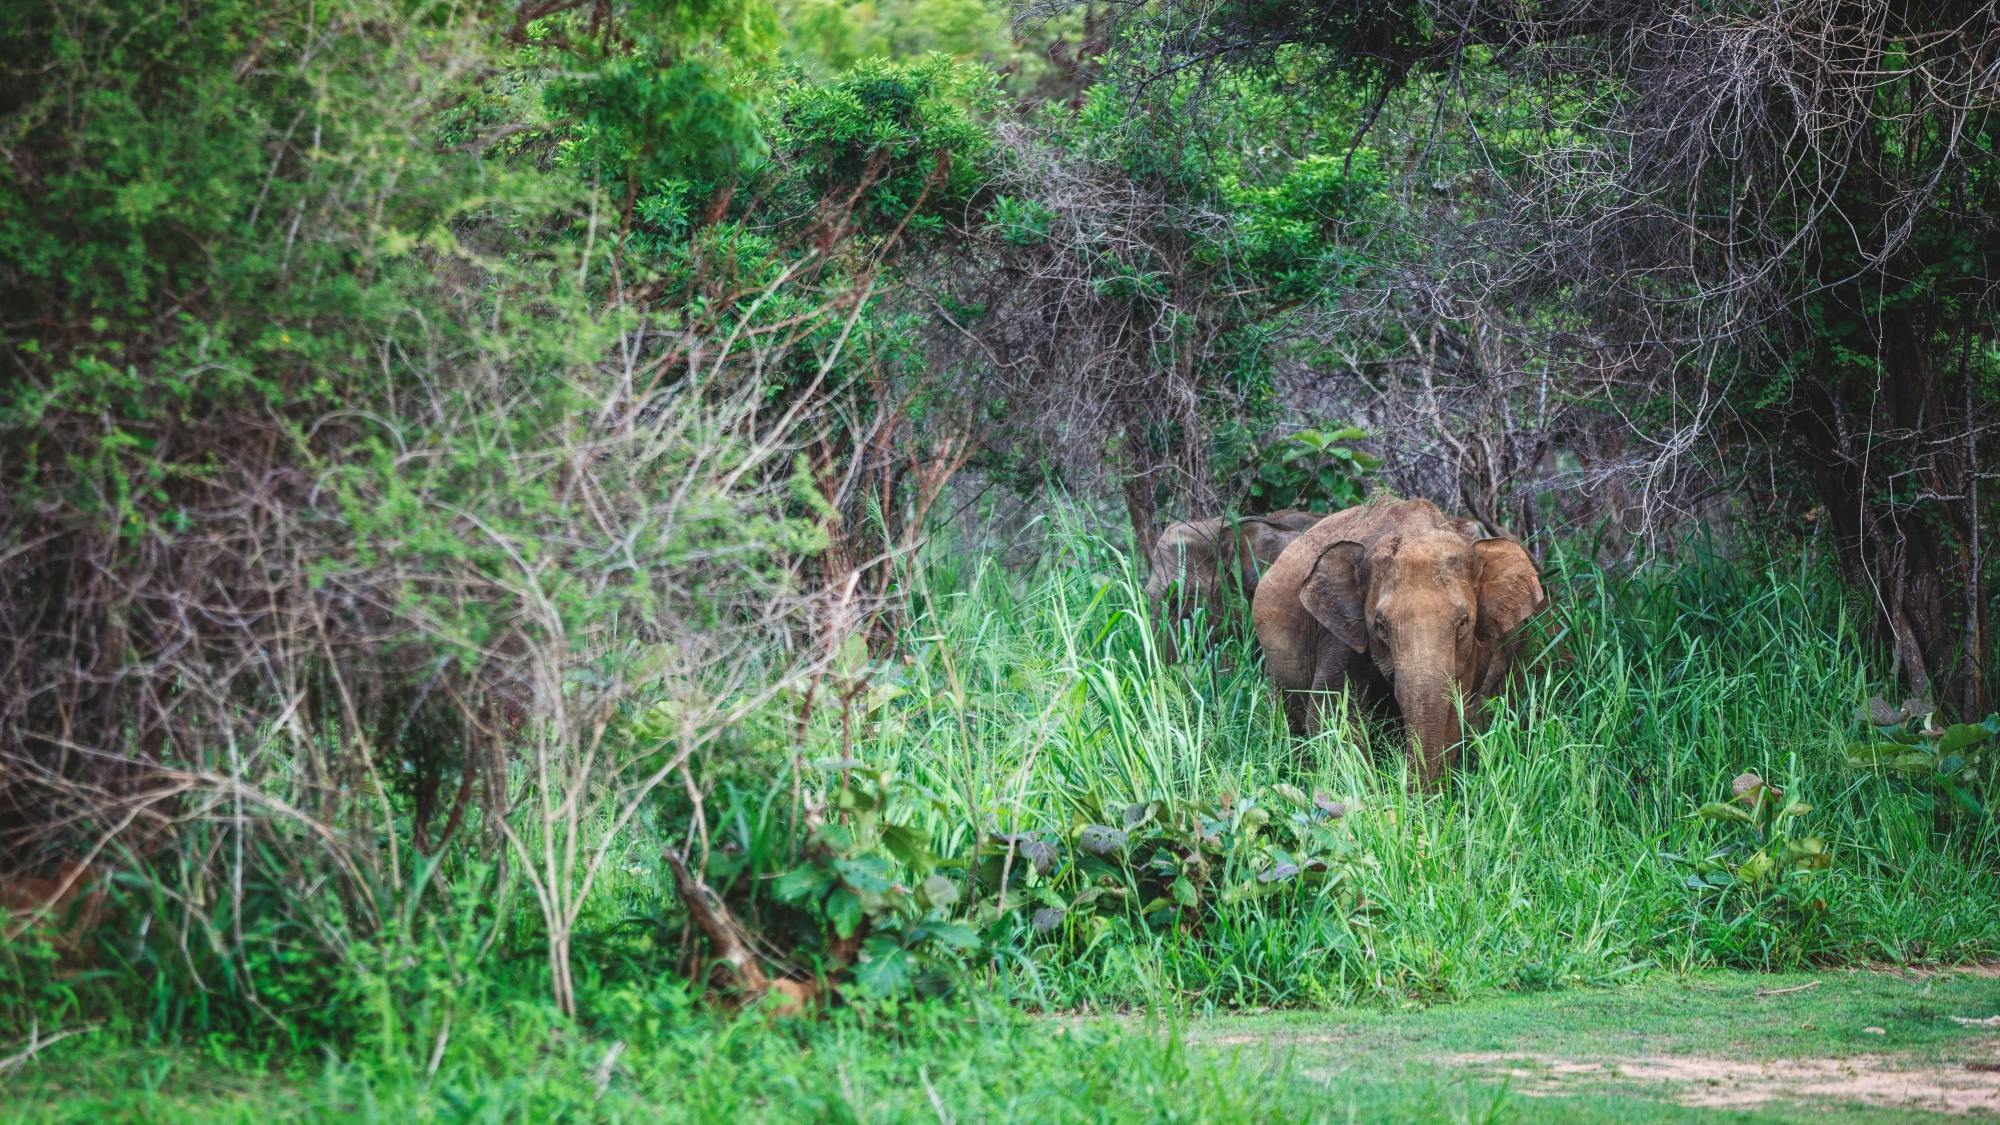 Kandy, Sigiriya, Dambulla & Minneriya Park Safari Two-day Tour from the East Coast